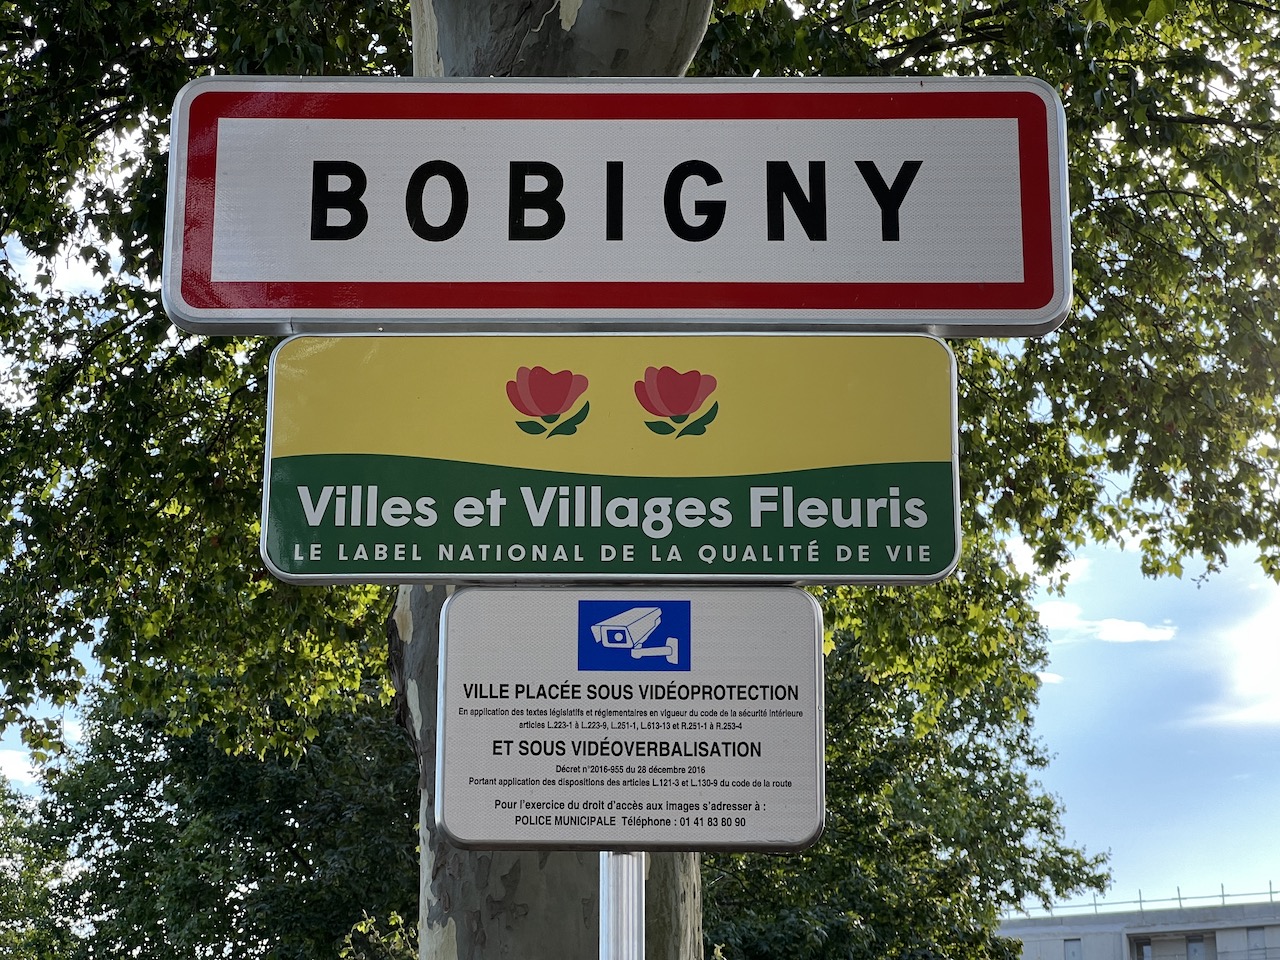 Bobigny : Les espaces verts idéaux pour se détendre et se ressourcer